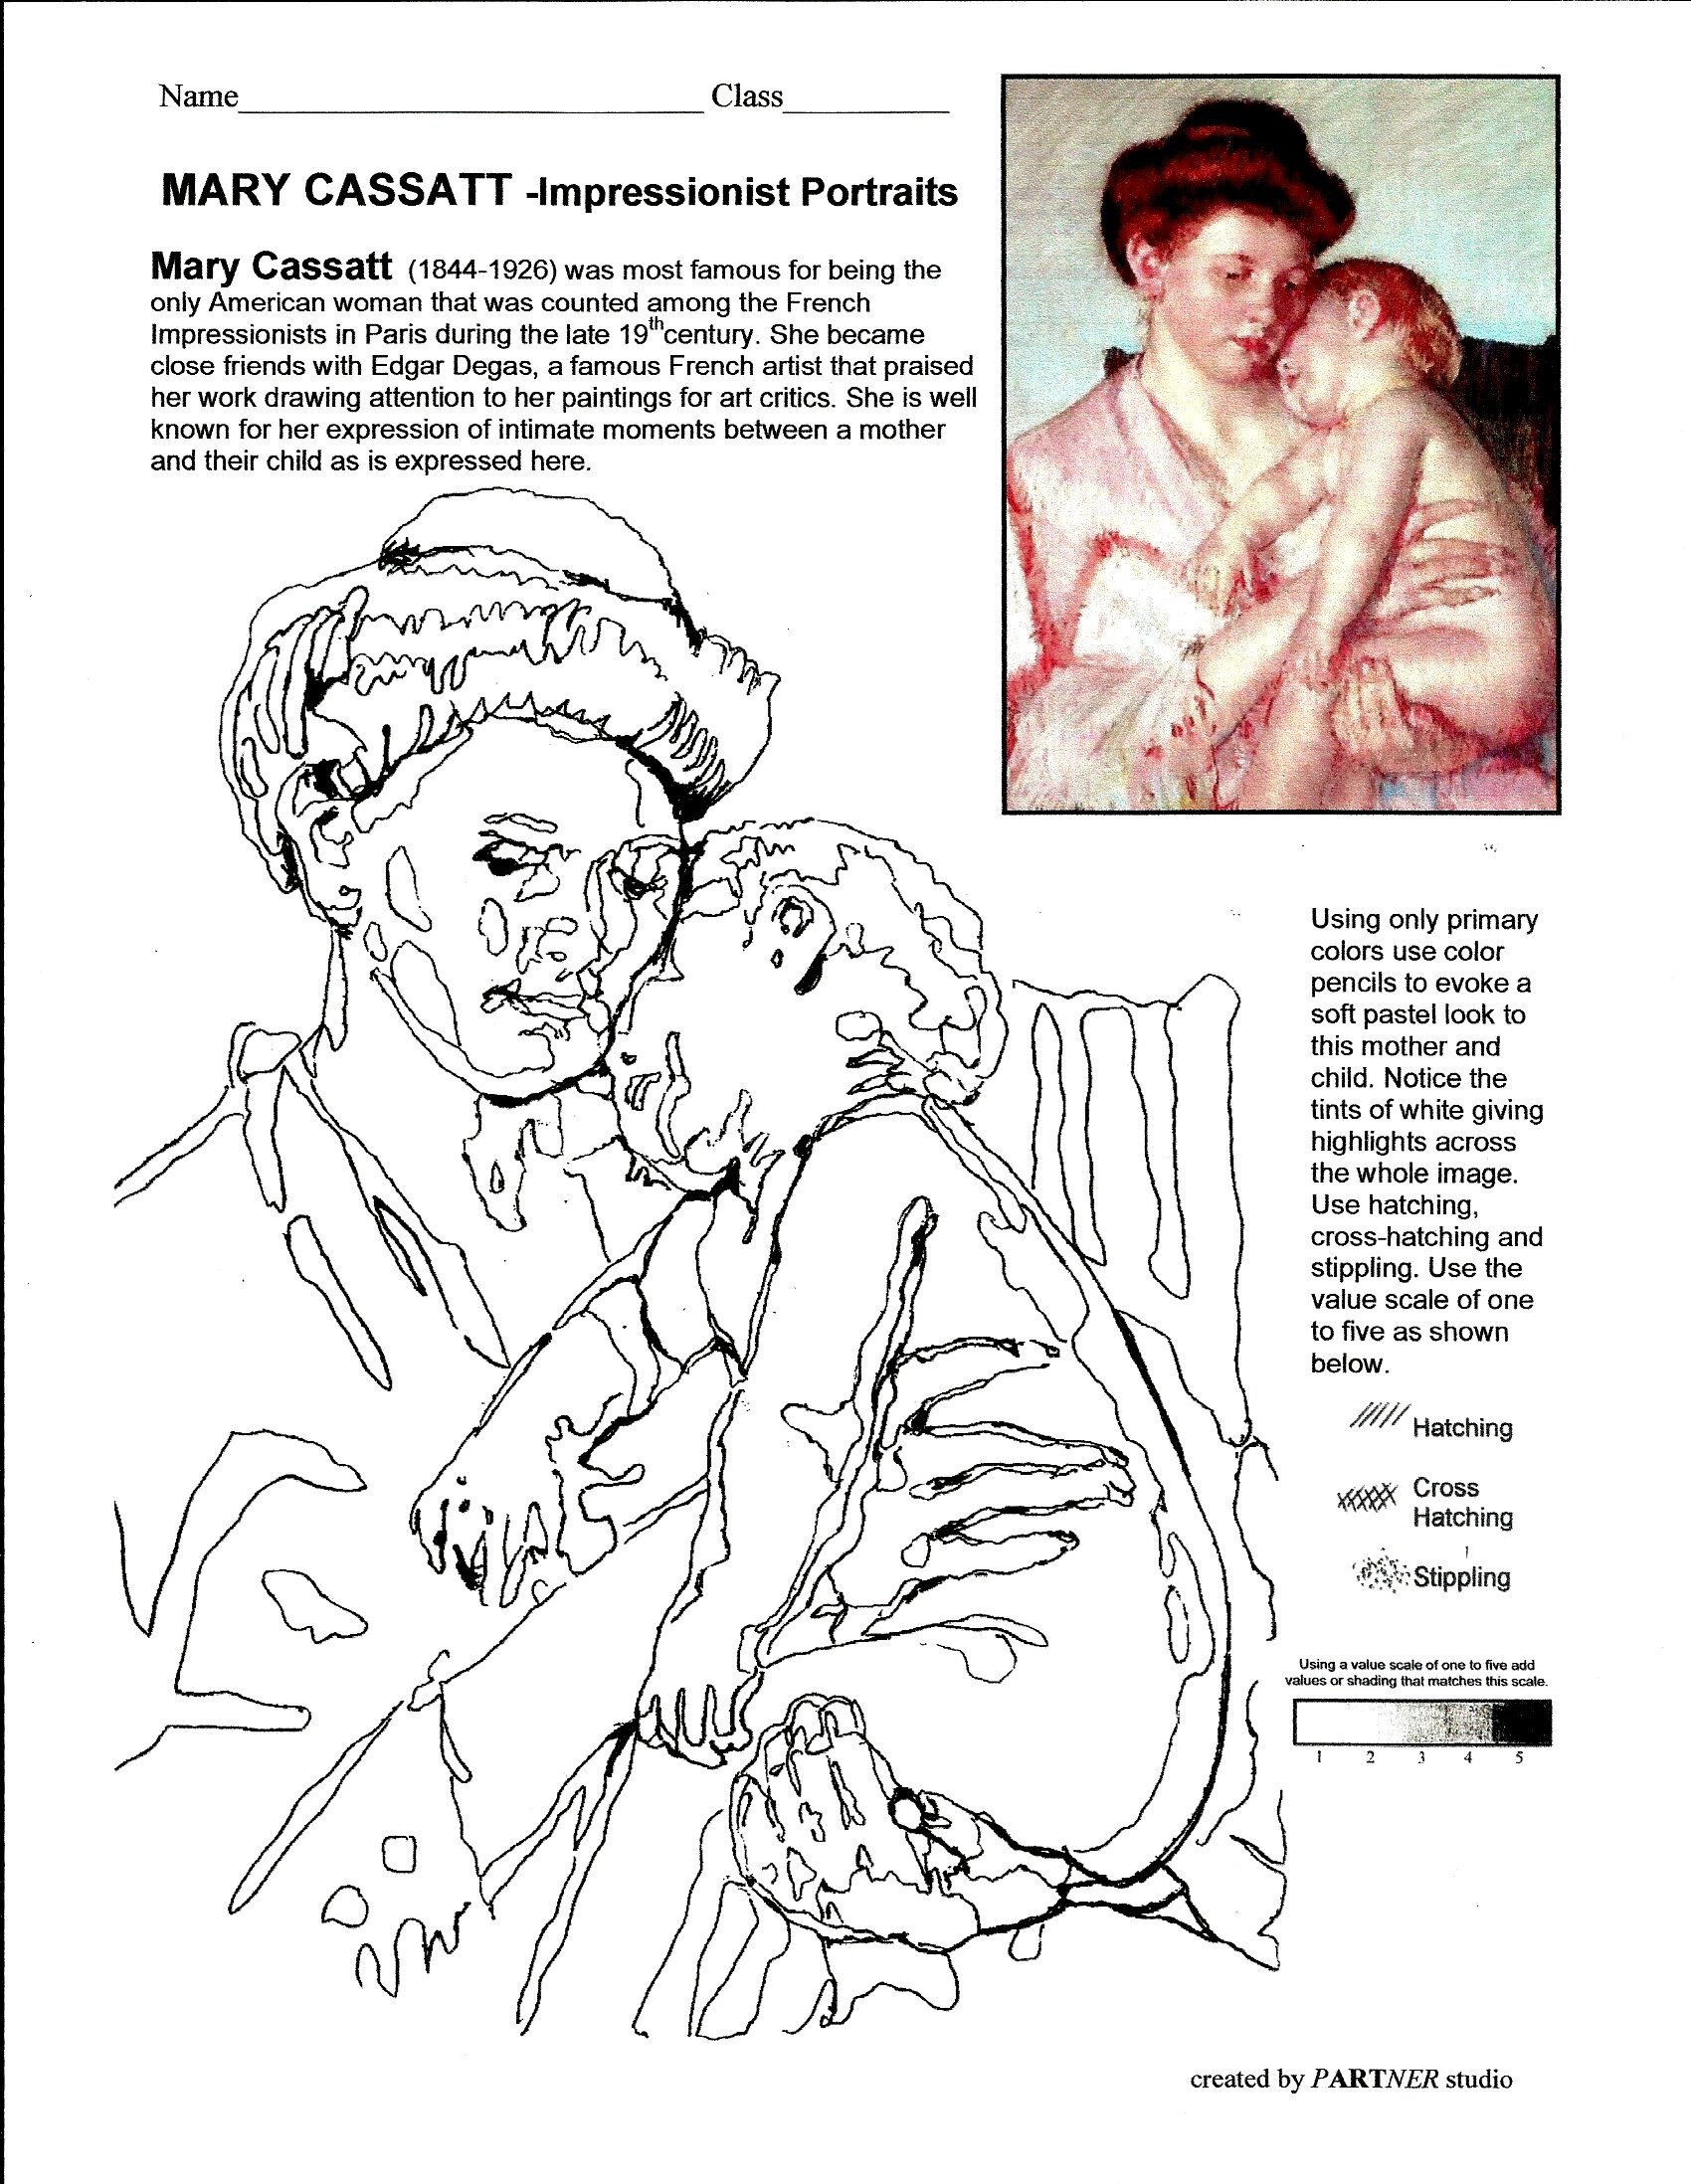 Mary Cassatt copy 2.jpg